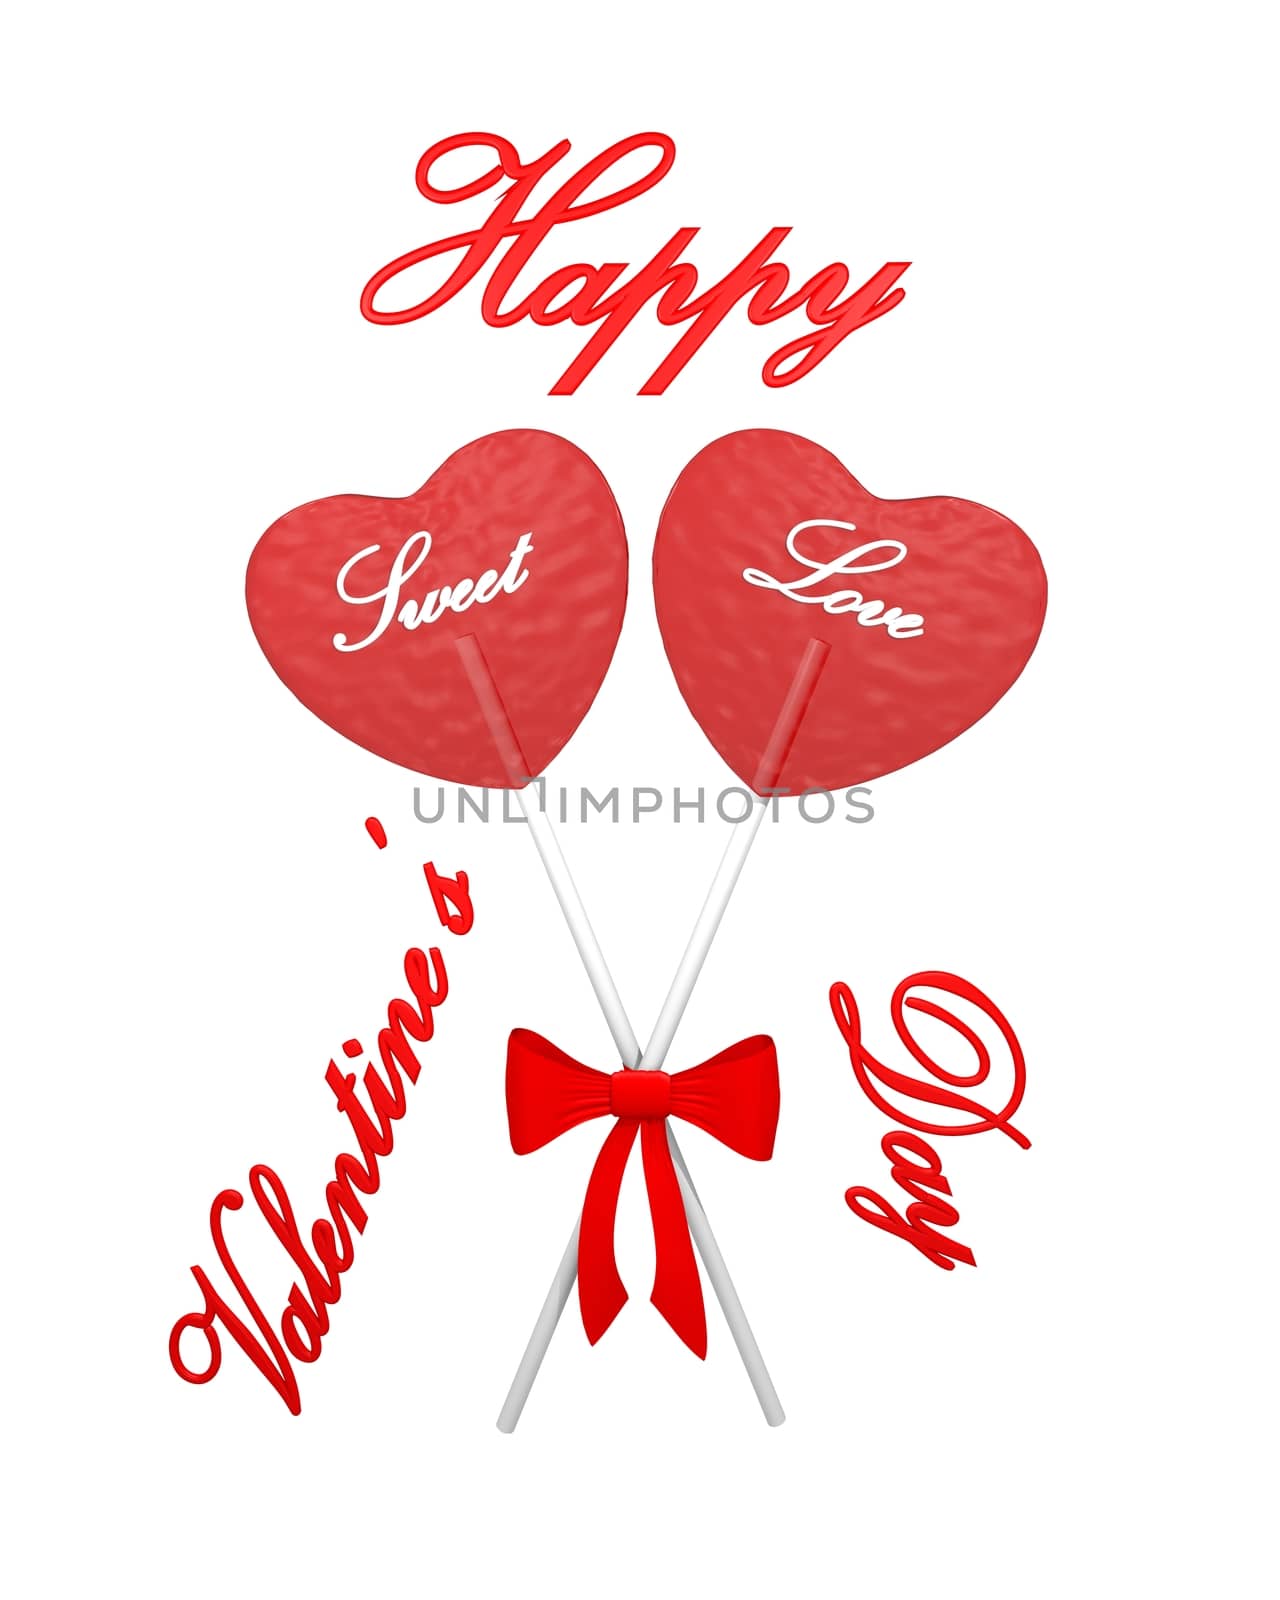 Two red heart lollipops by midani